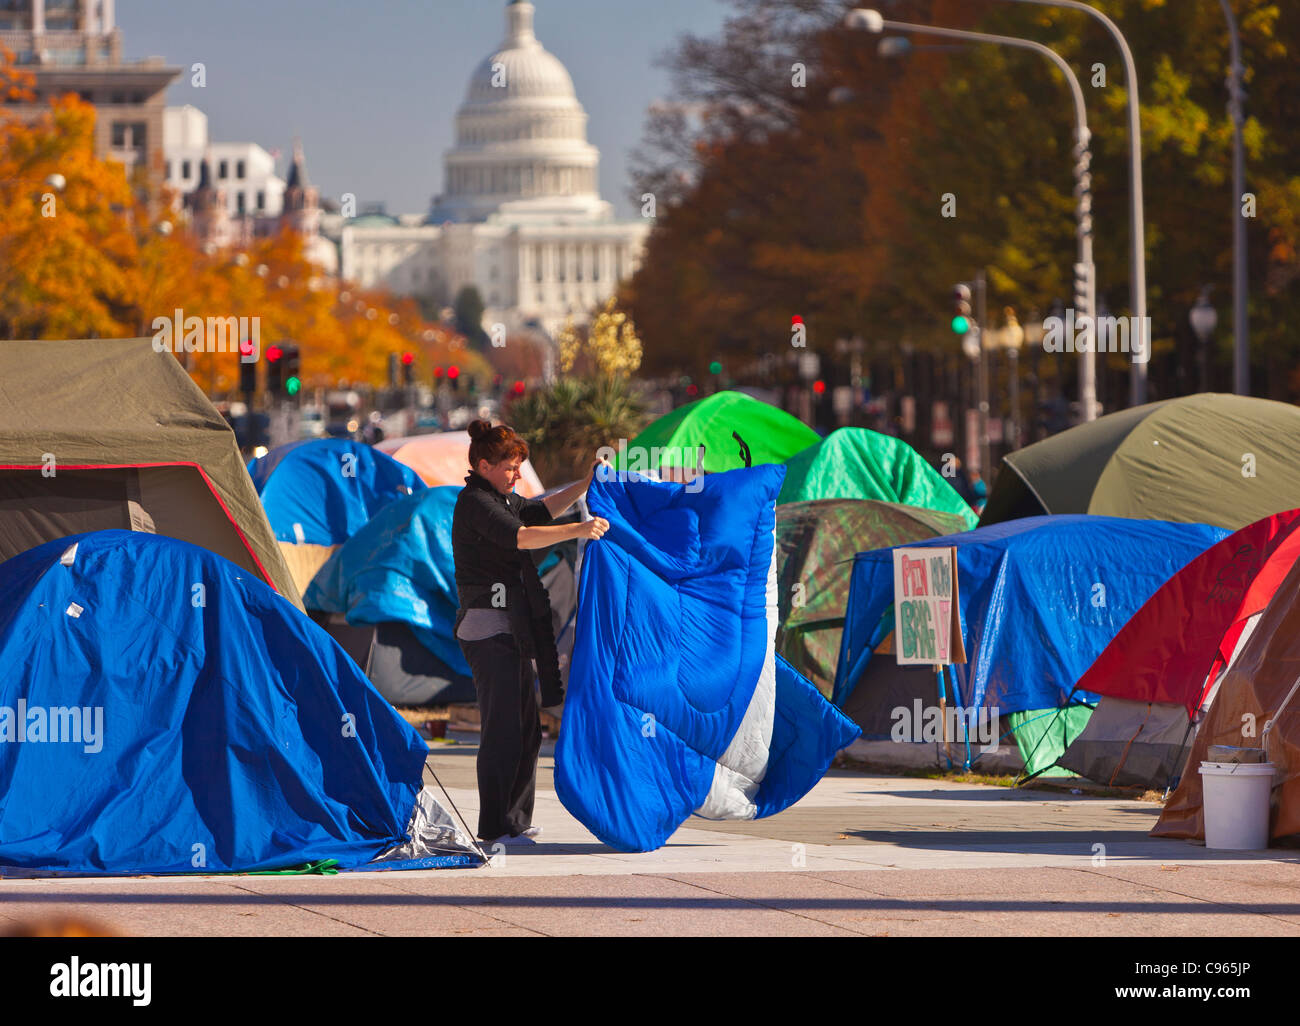 WASHINGTON, DC, EE.UU. Washington - ocupan campamento de protesta en la Plaza de la libertad y la cúpula del Capitolio en la distancia. Foto de stock